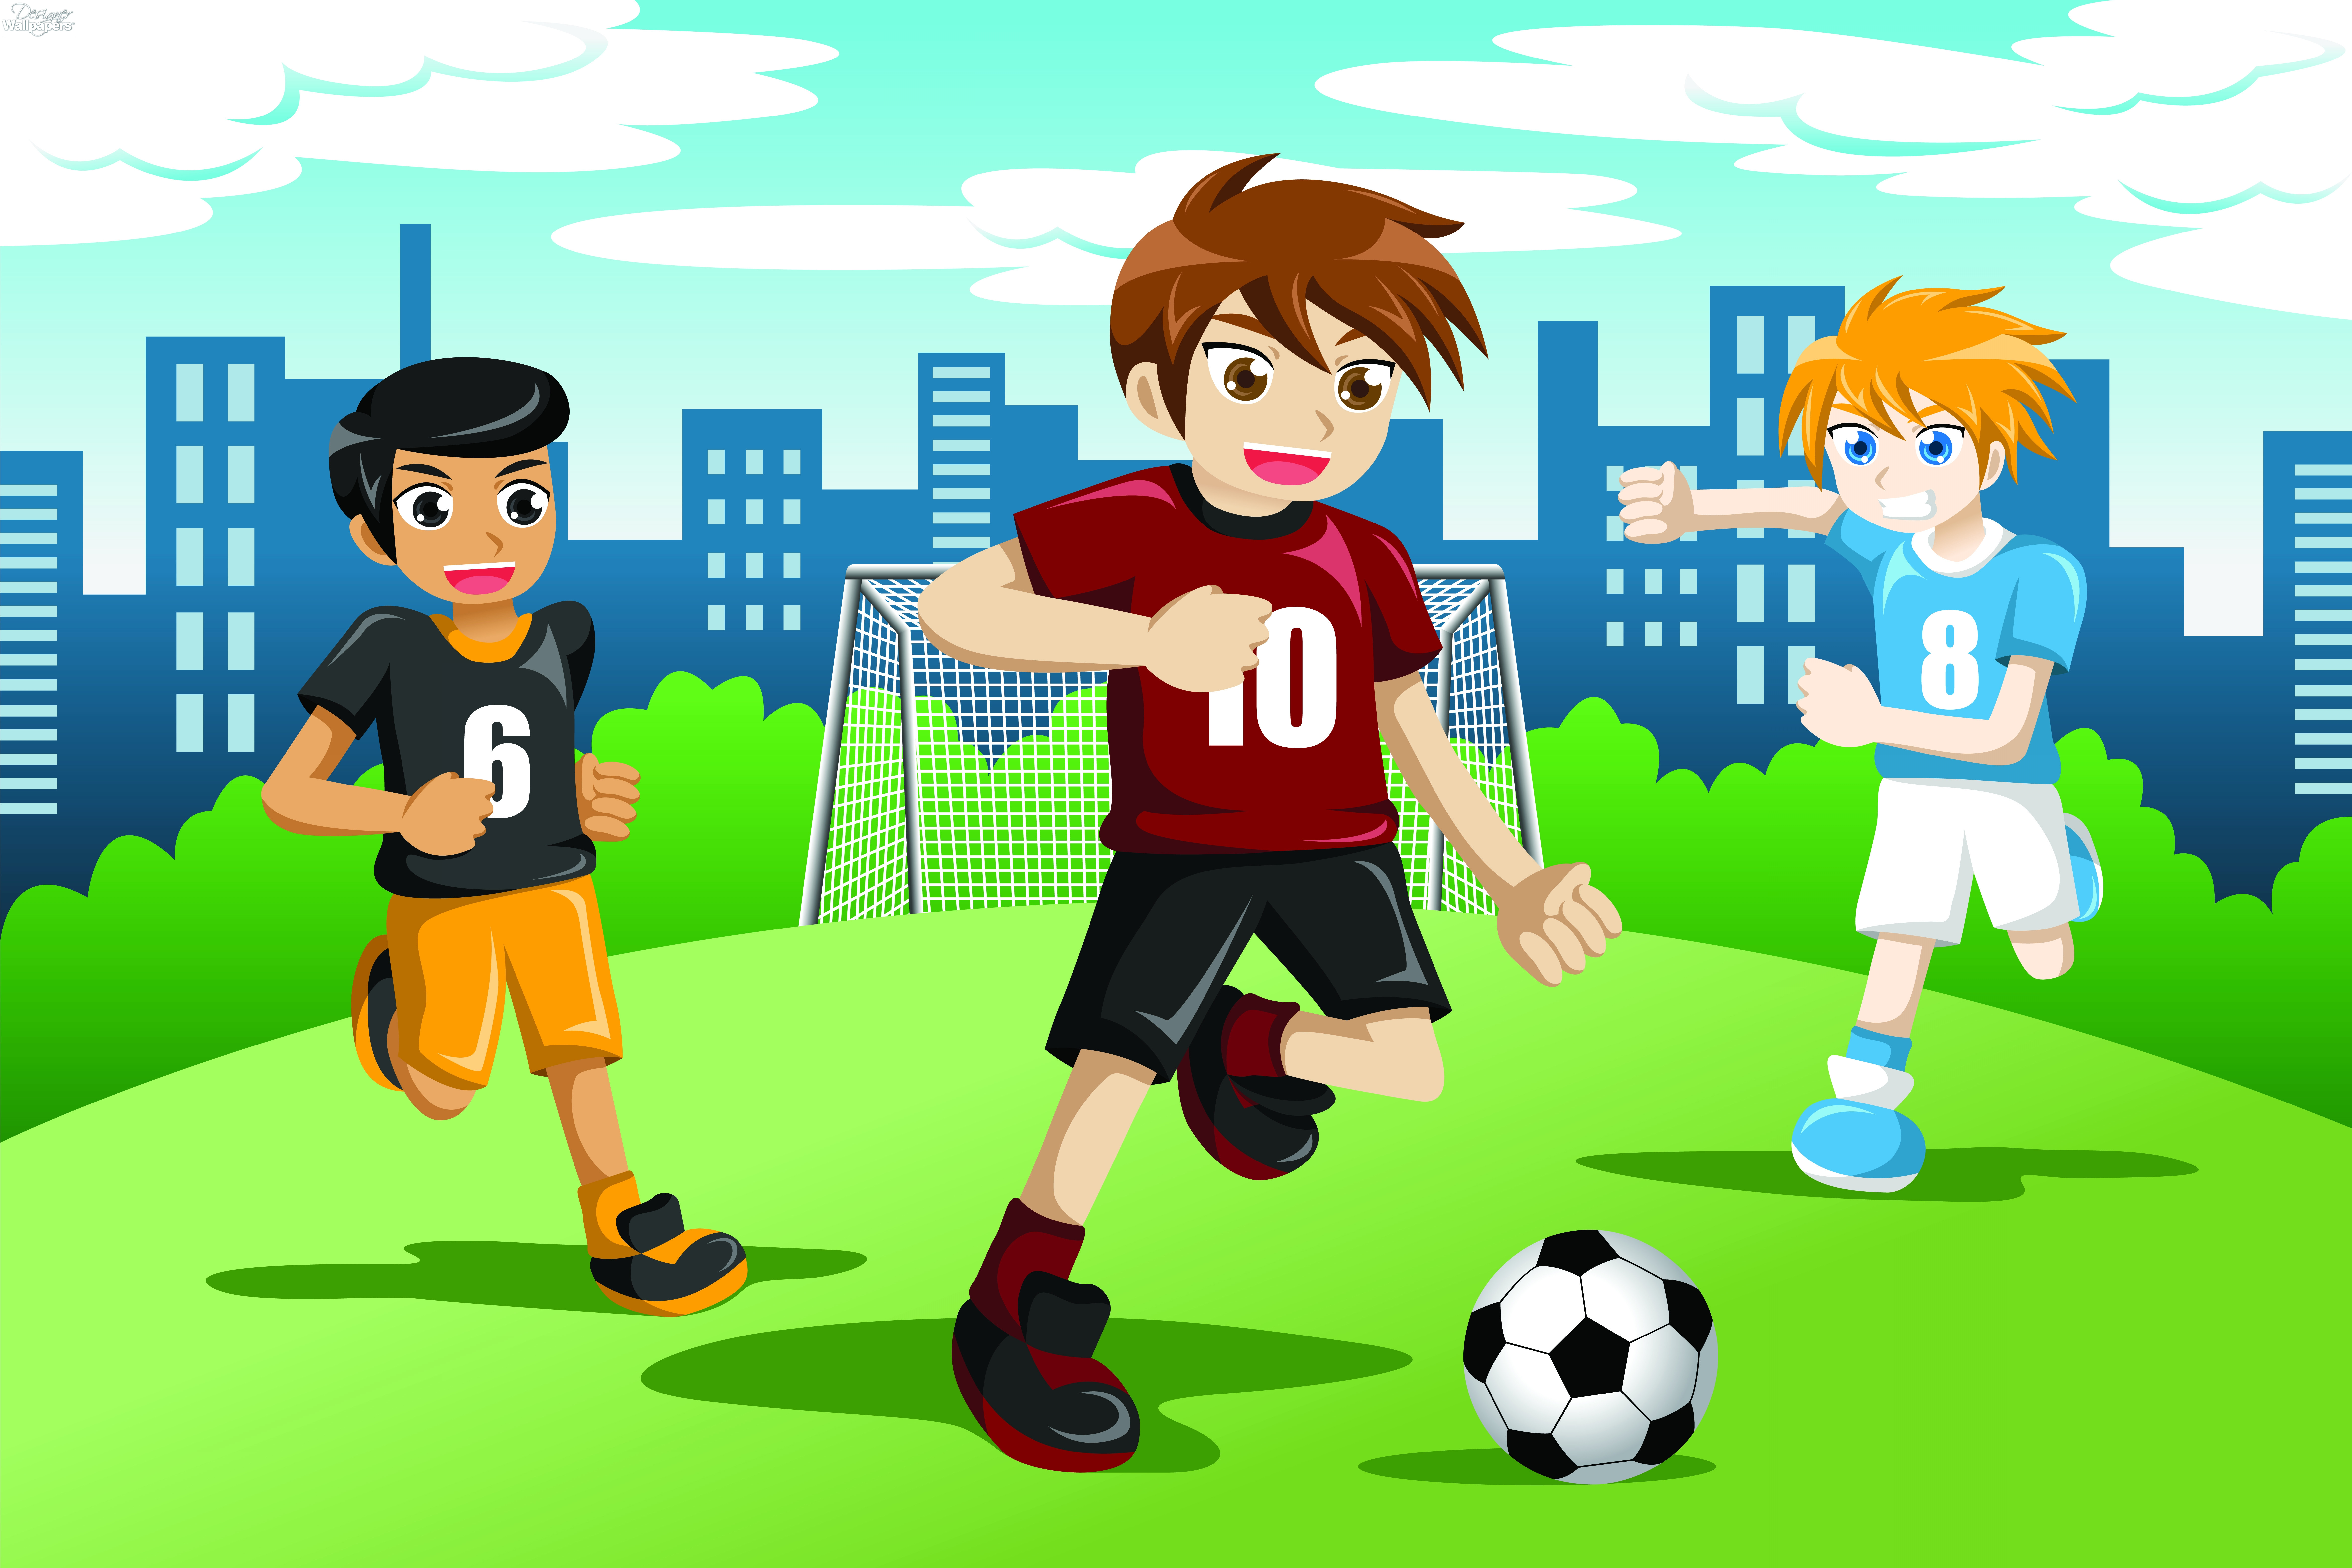 Игры нарисованный мальчик. Дети играют в футбол. Игра в футбол картинки. Мультяшные футболисты. Игра в футбол картинки для детей.